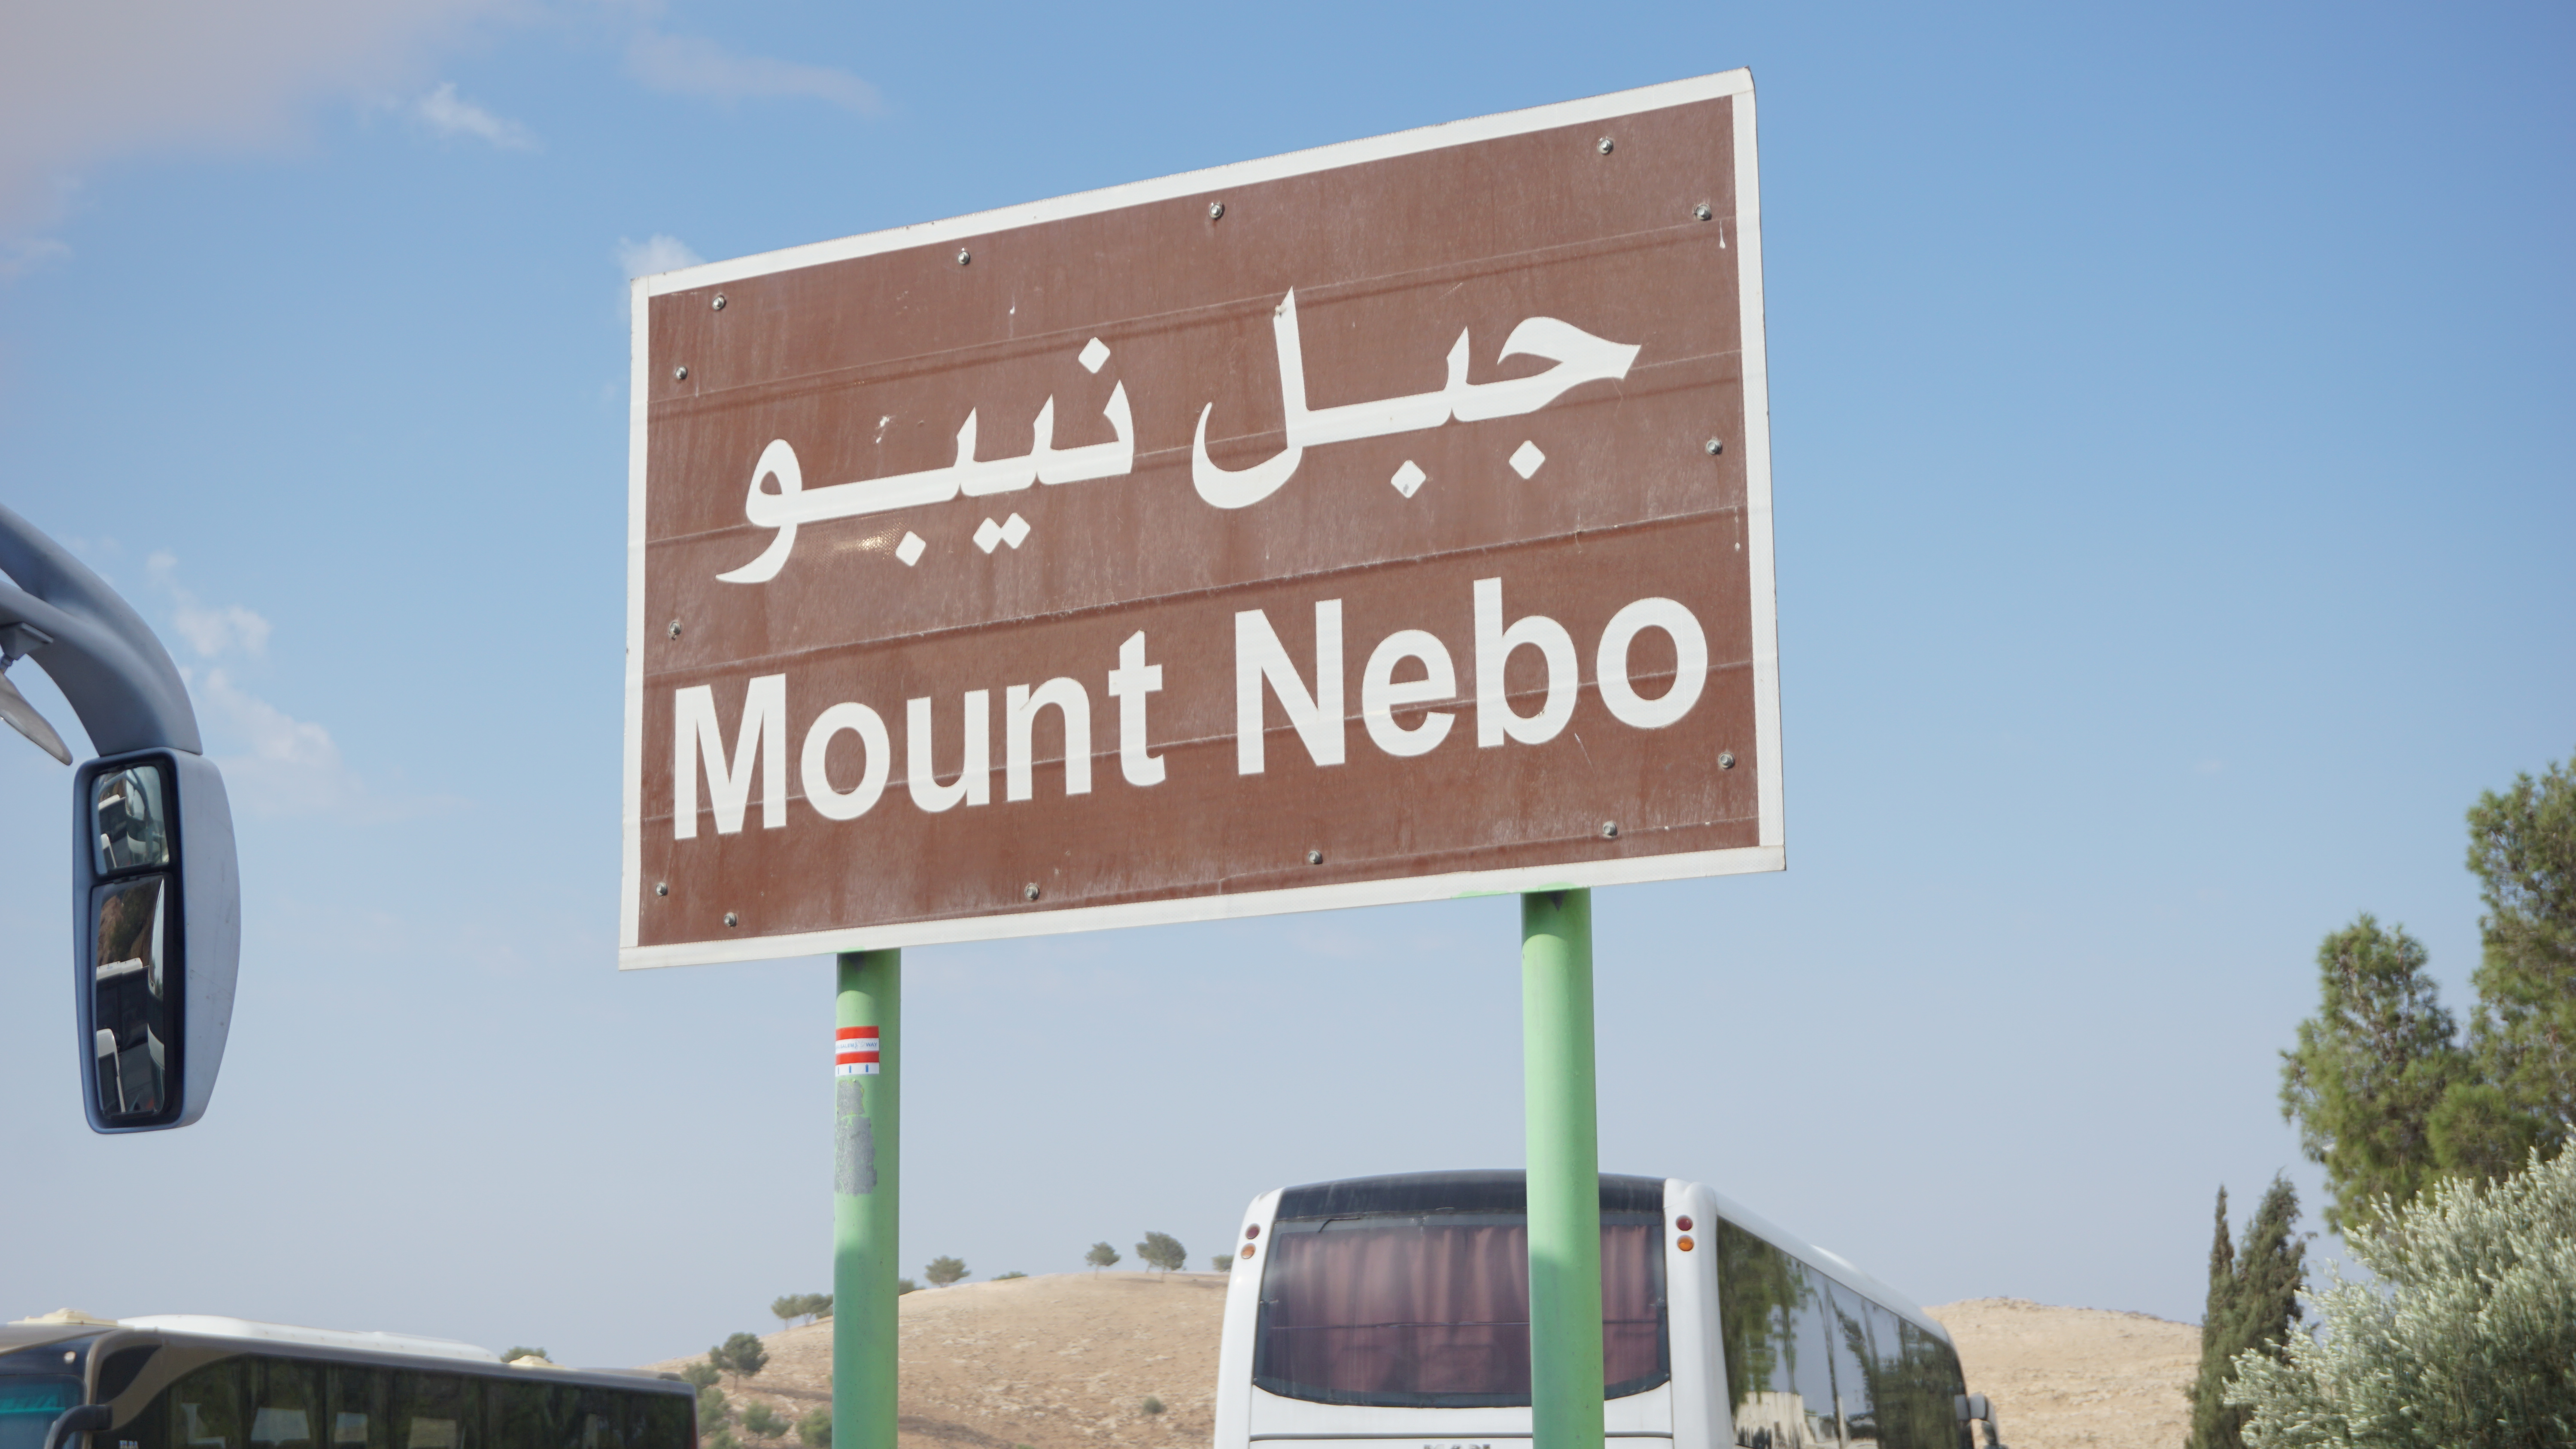 Mount Nebo Holy Land